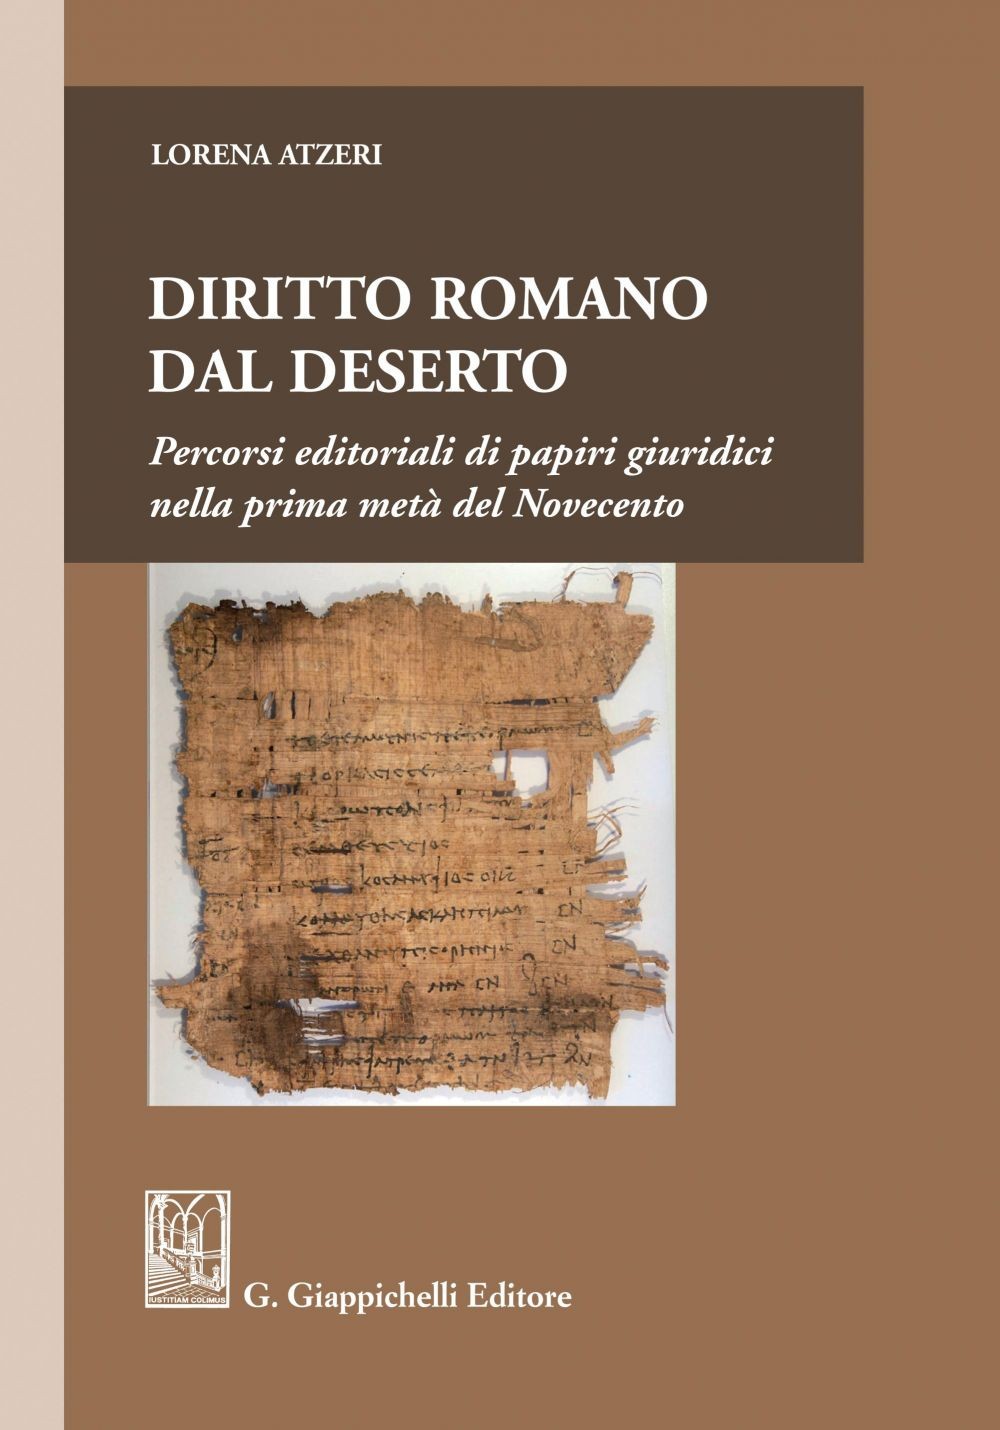 Diritto romano dal deserto - e-Book - Librerie.coop